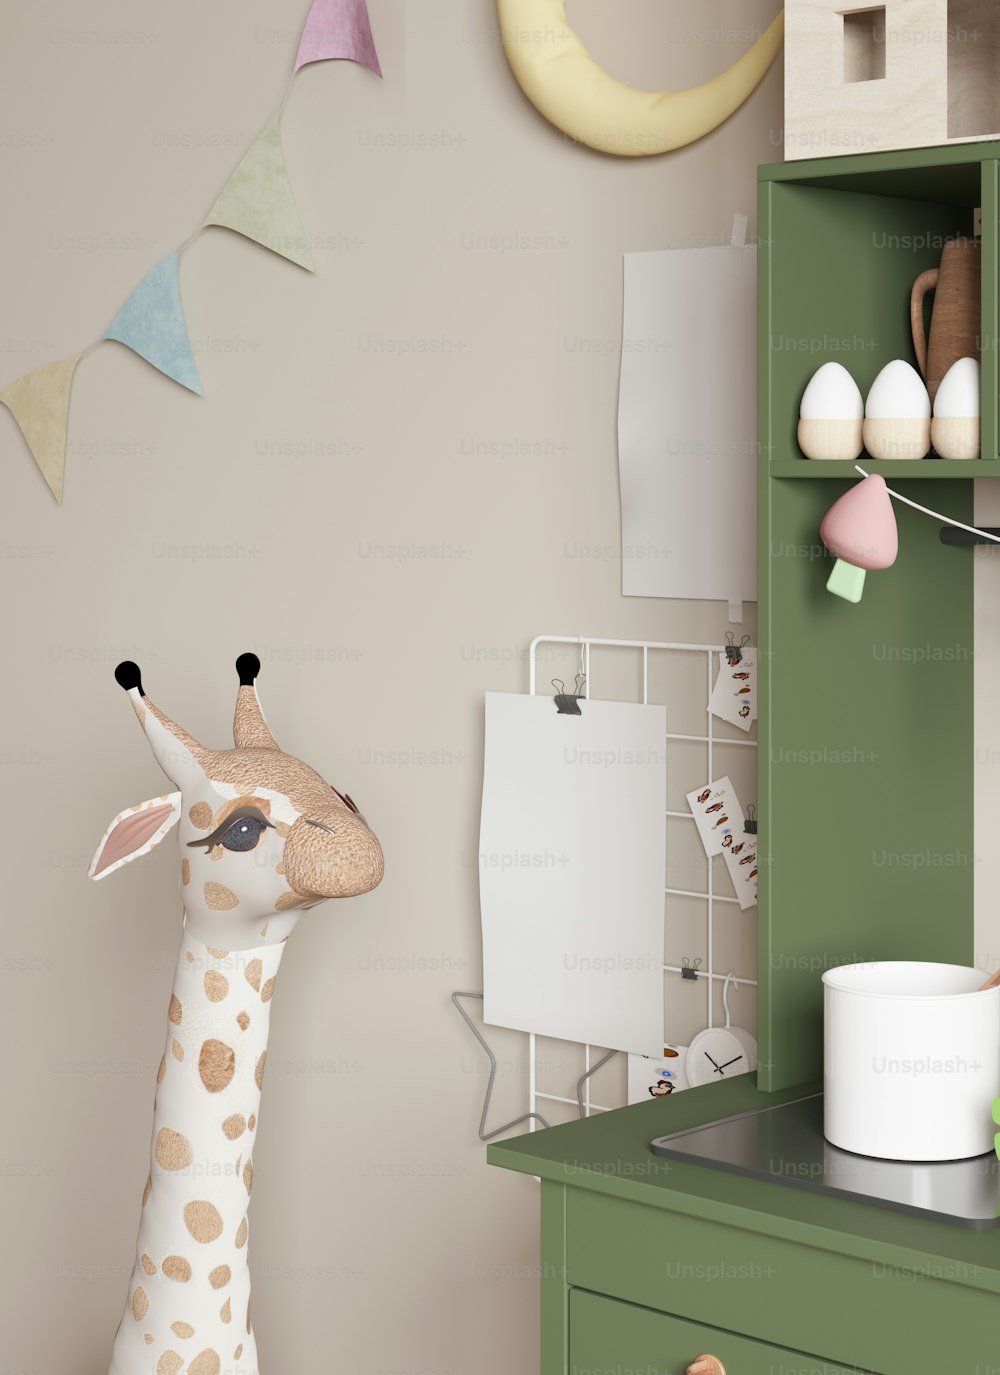 Una giraffa giocattolo in piedi accanto a un armadietto verde